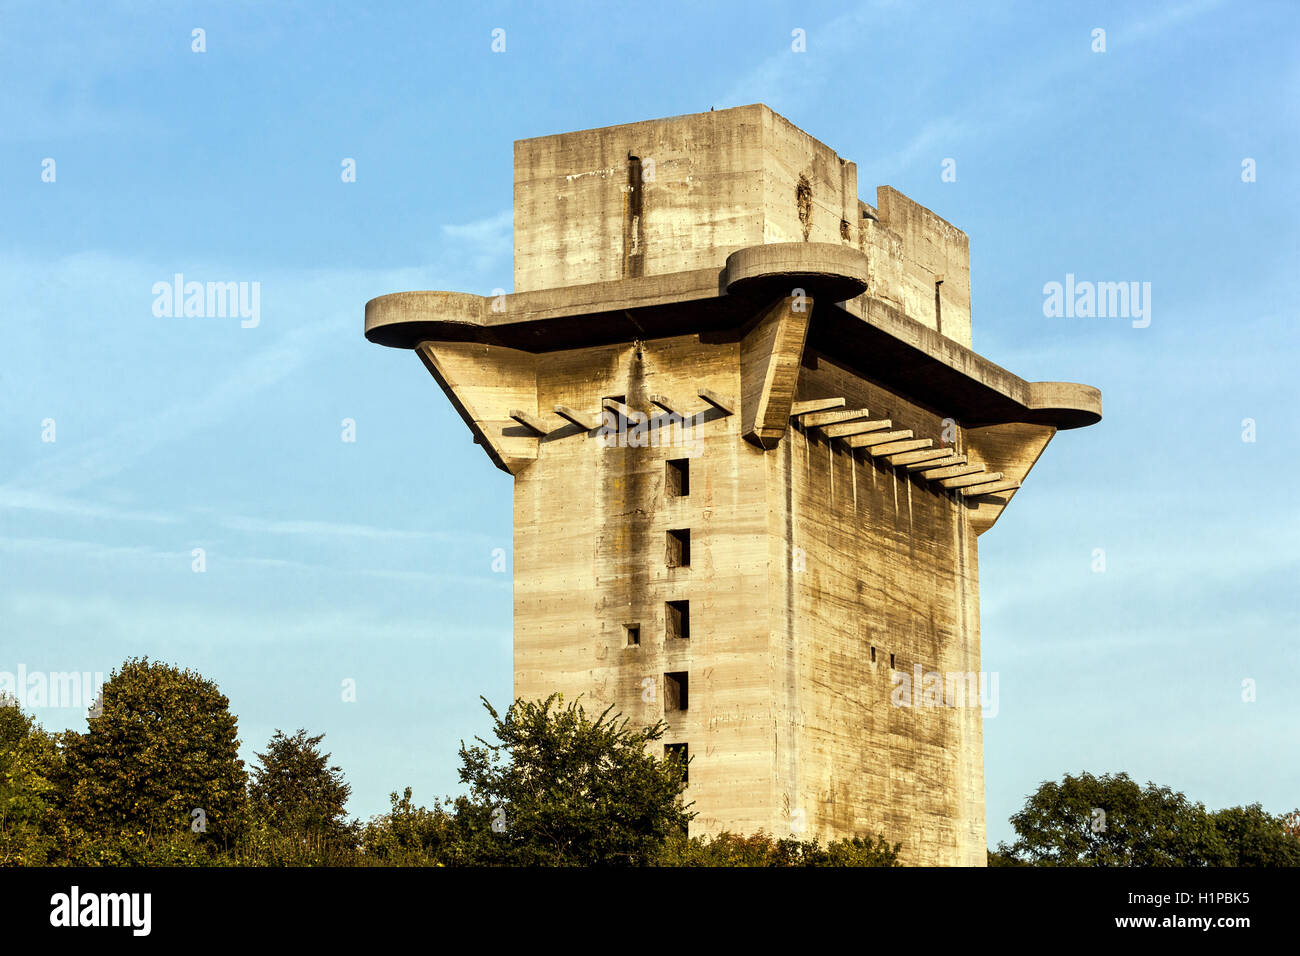 Eine deutsche Flakturm Flakturm, ein Überbleibsel aus dem zweiten Welt Krieg, Anti-Aircraft Bunker, Augarten, Wien, Österreich Stockfoto